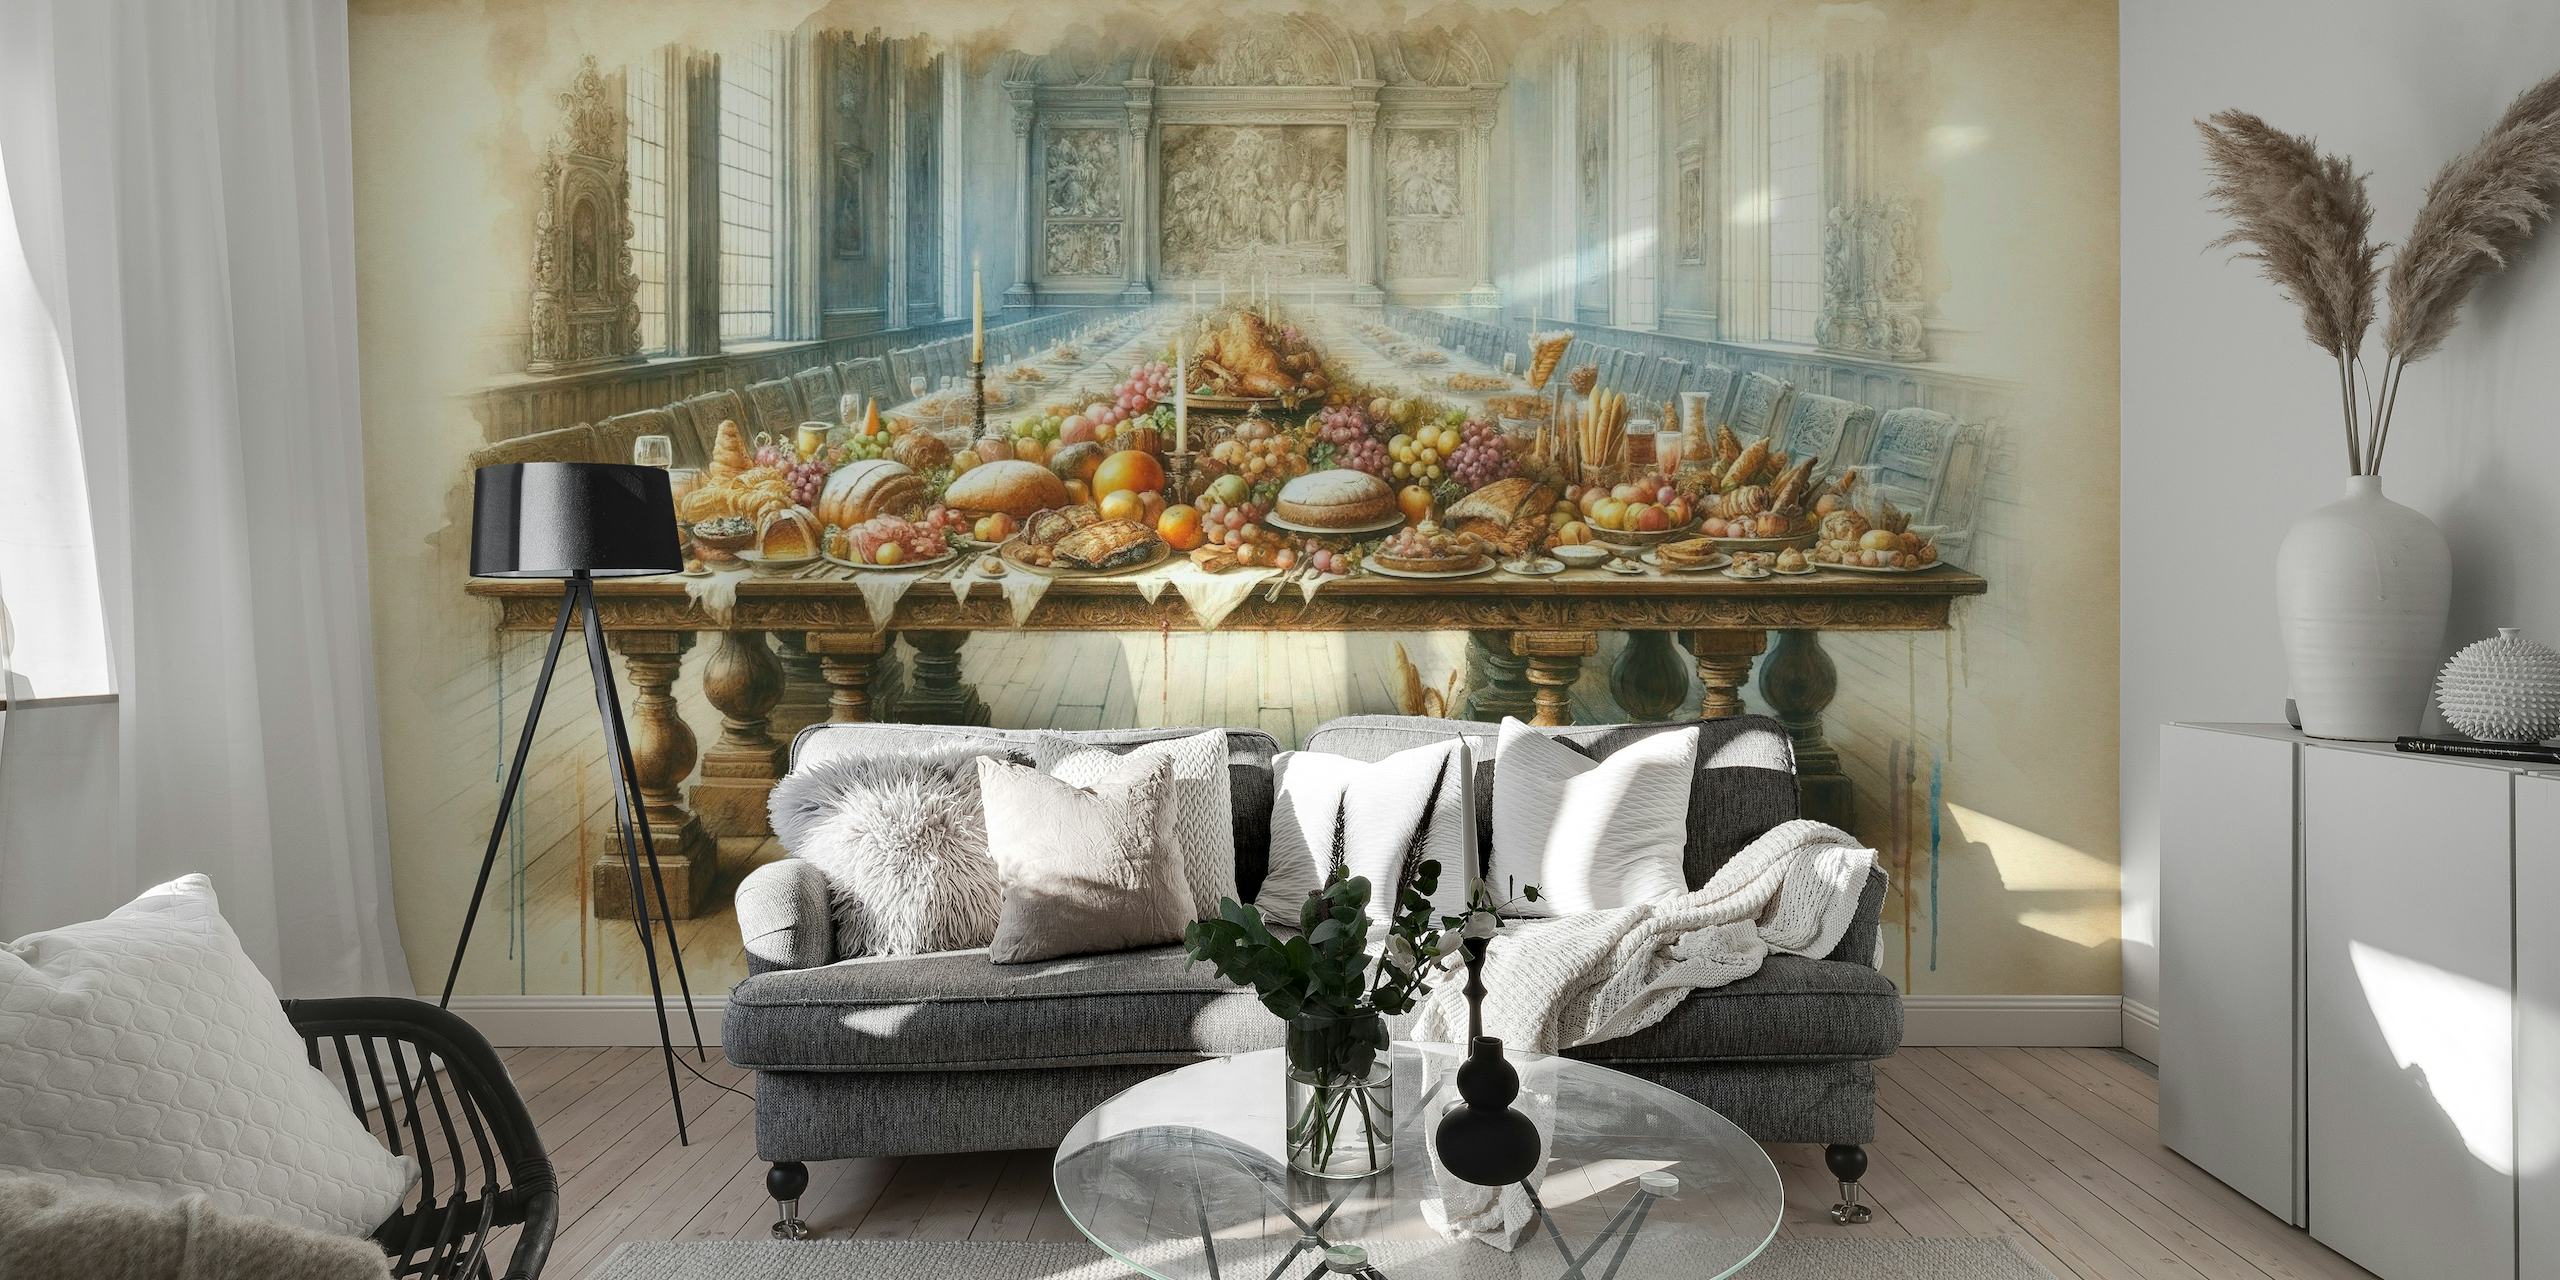 Banquet of Abundance wallpaper